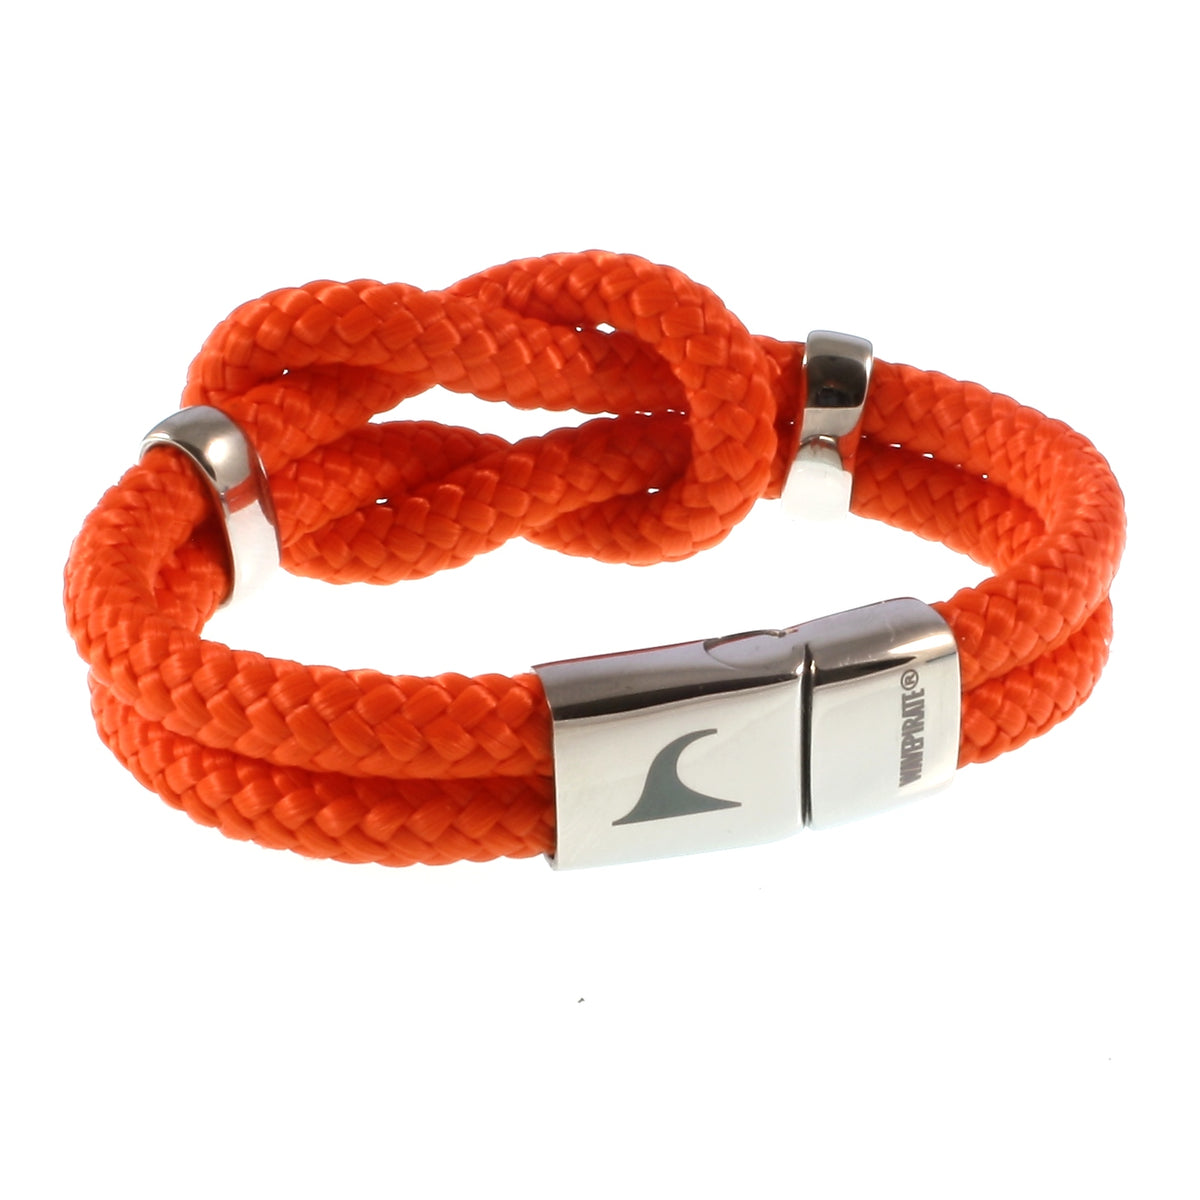 Damen-Segeltau-armband-pure-orange-silber-geflochten-Edelstahlverschluss-hinten-wavepirate-shop-st